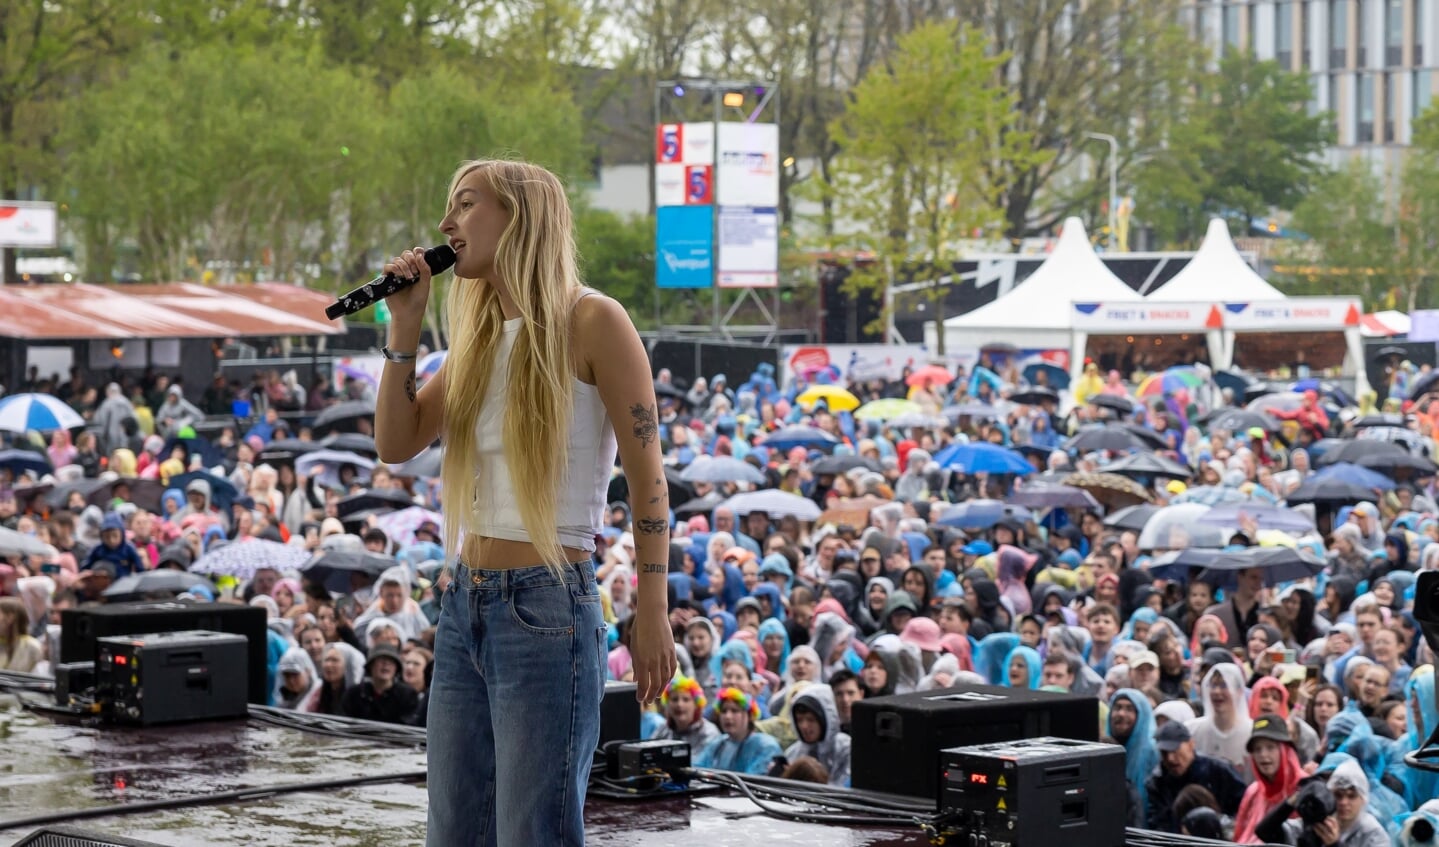 S10 tijdens haar optreden op het Bevrijdingsfestival. In regenkleding en onder paraplu's kijkt het publiek toe. 